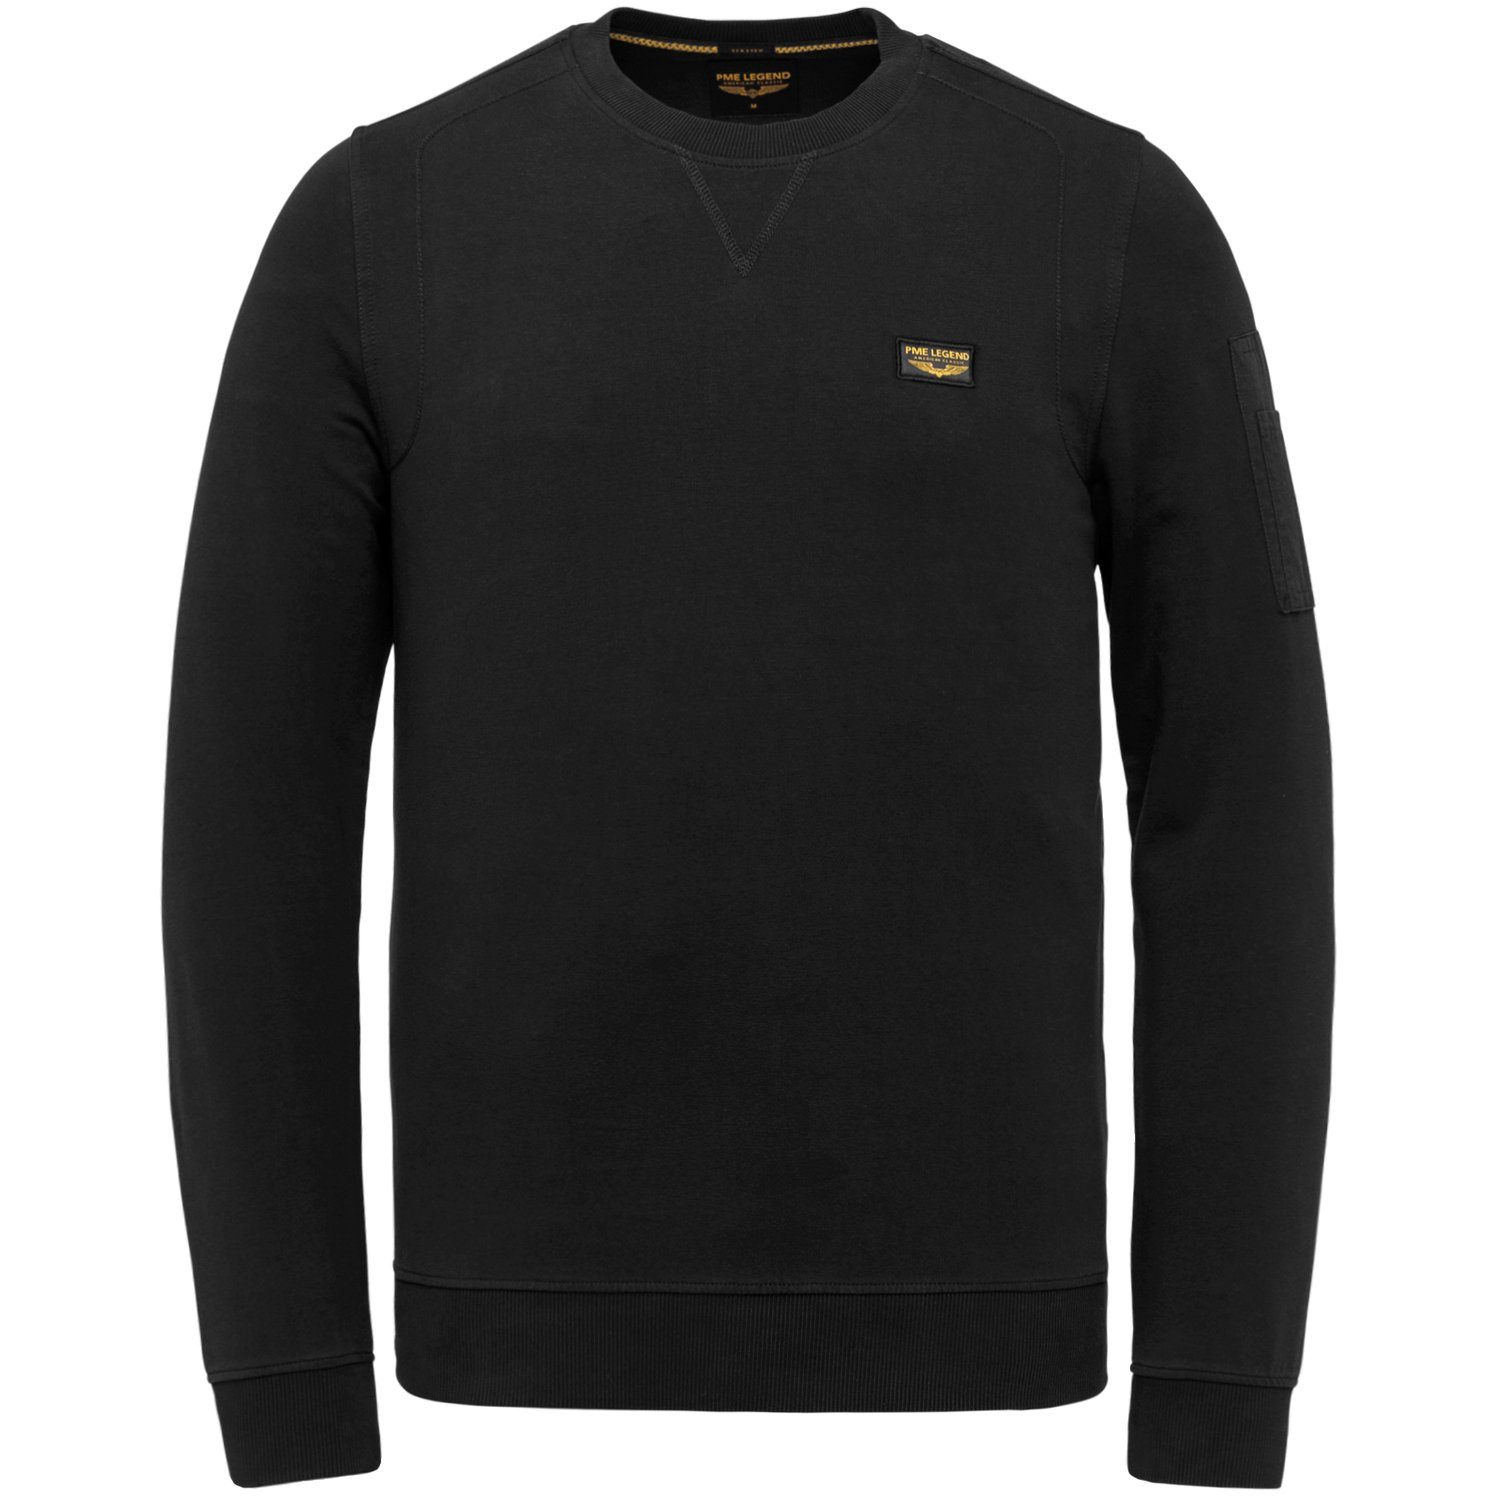 AIRSTRIP Baumwollmix 999 Sweatshirt aus Black PME LEGEND